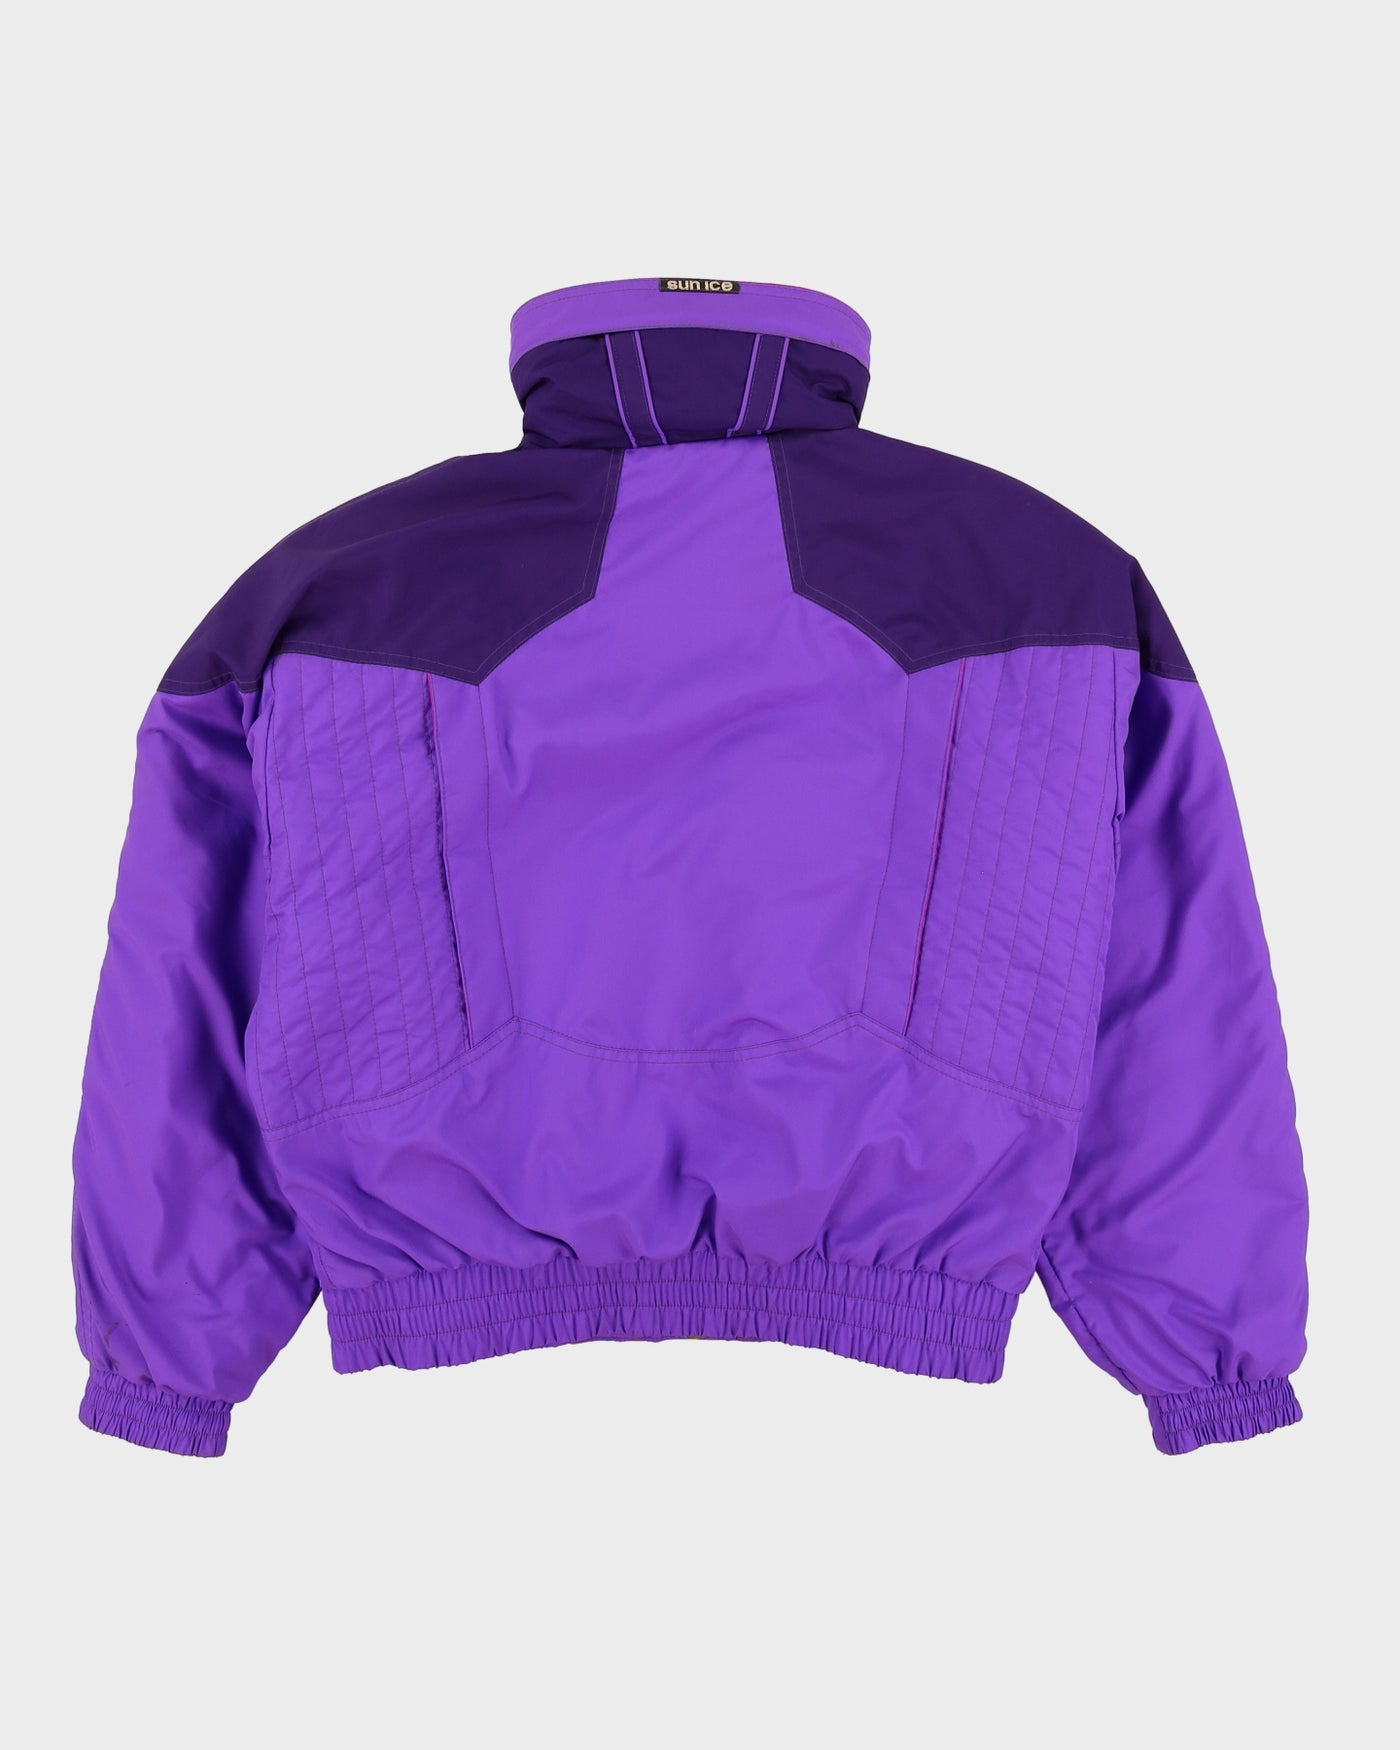 Vintage 80s Sun Ice Purple Ski Jacket - M